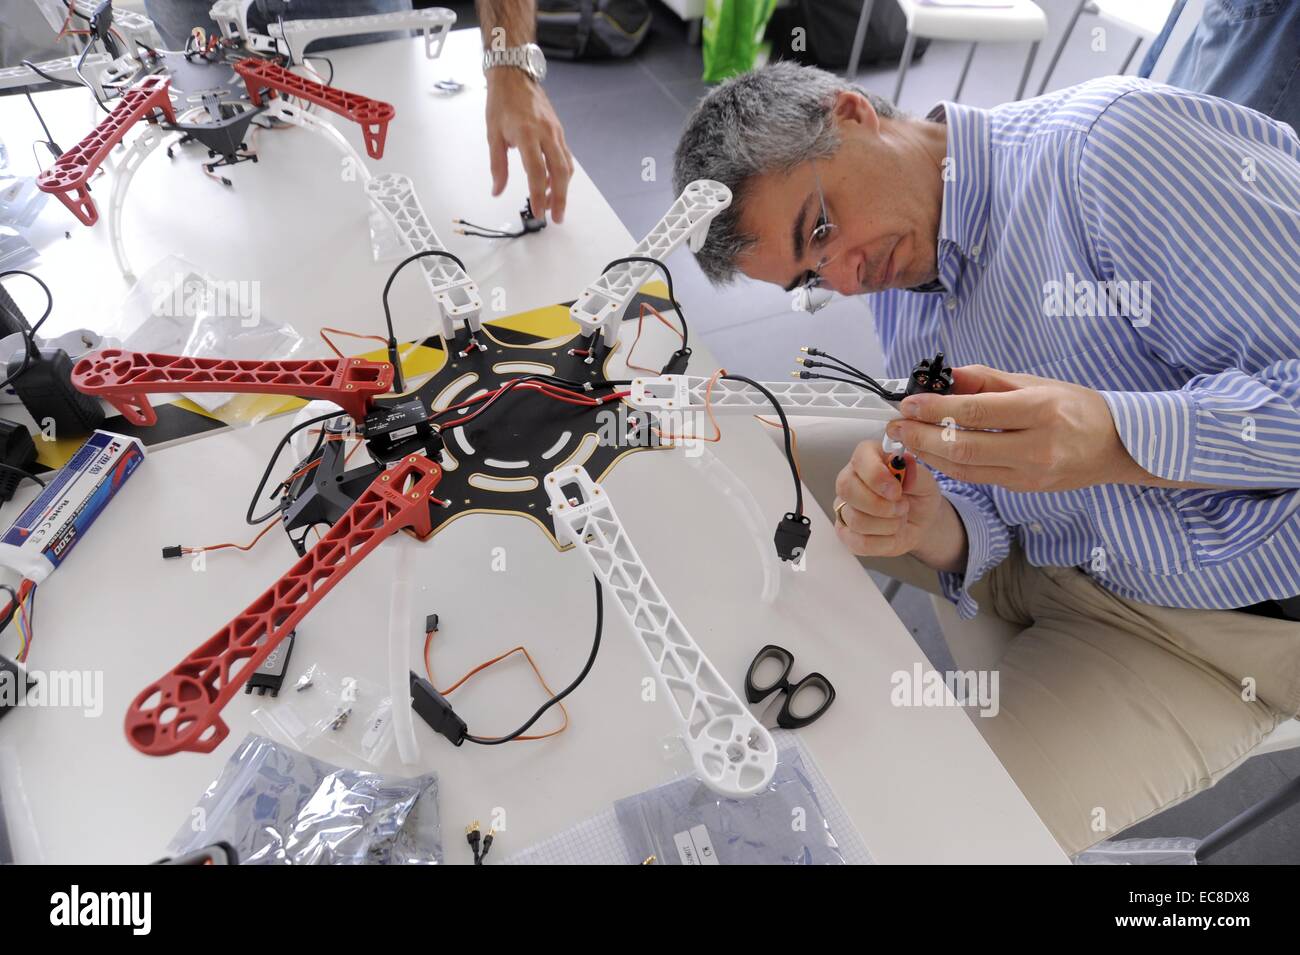 Italien, Mailand FabLab (Fabrication Laboratory), Werkstatt für den Bau einer Drohne Stockfoto